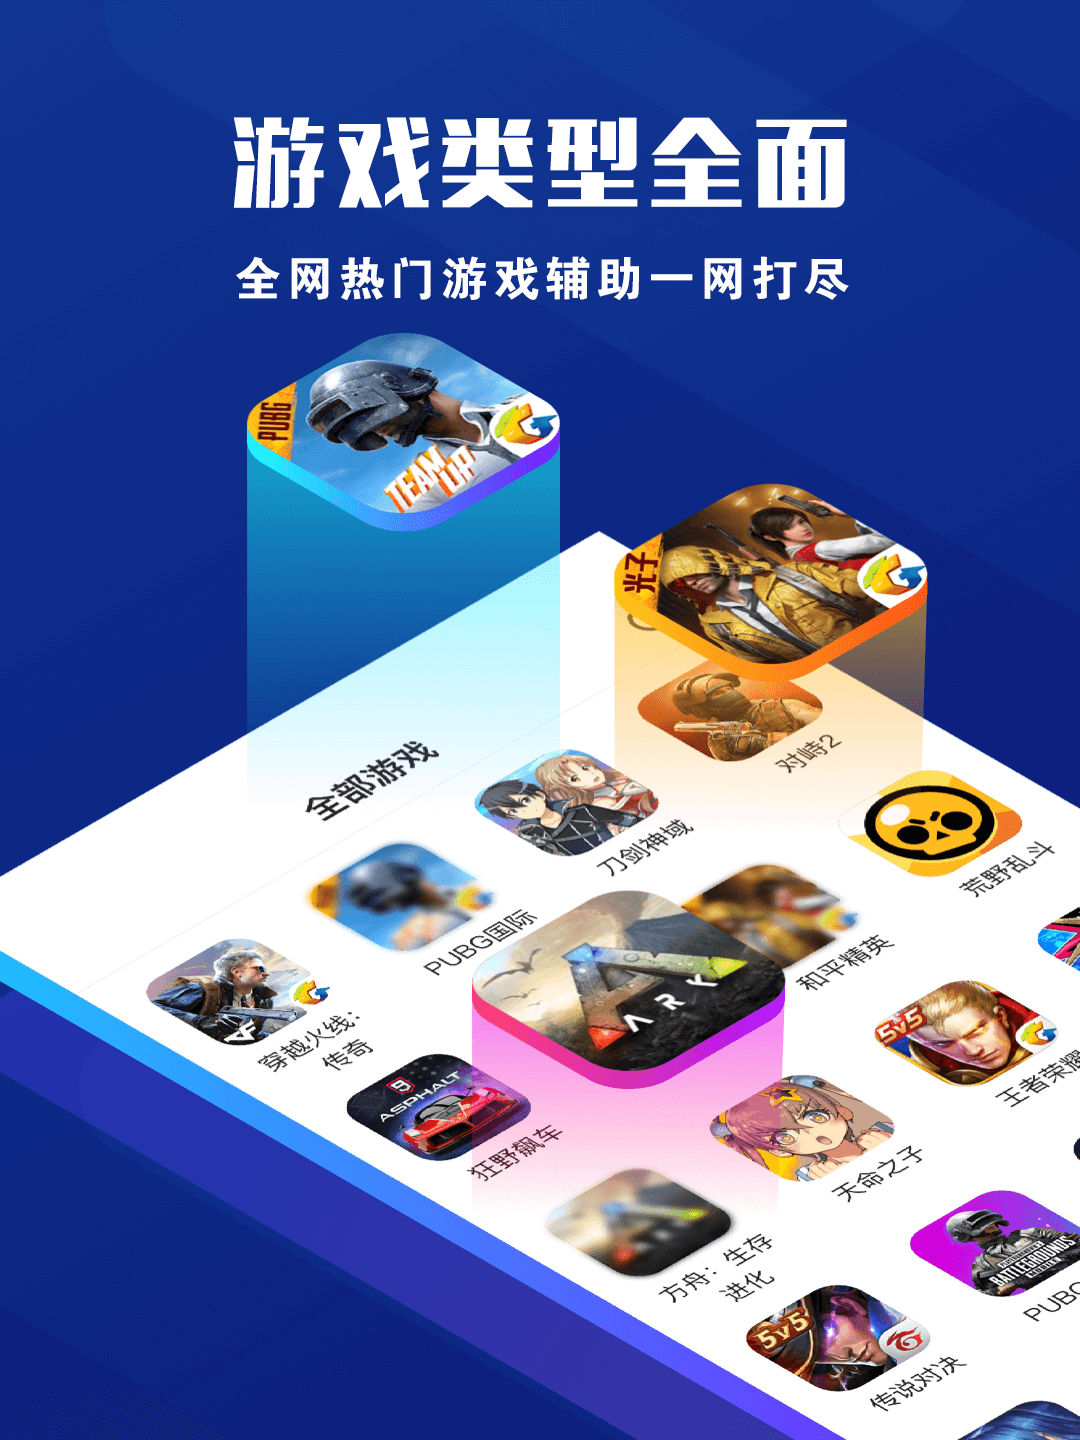 seo优化-辅助卡盟平台,全·快·新,游戏全，更新快，攻略新